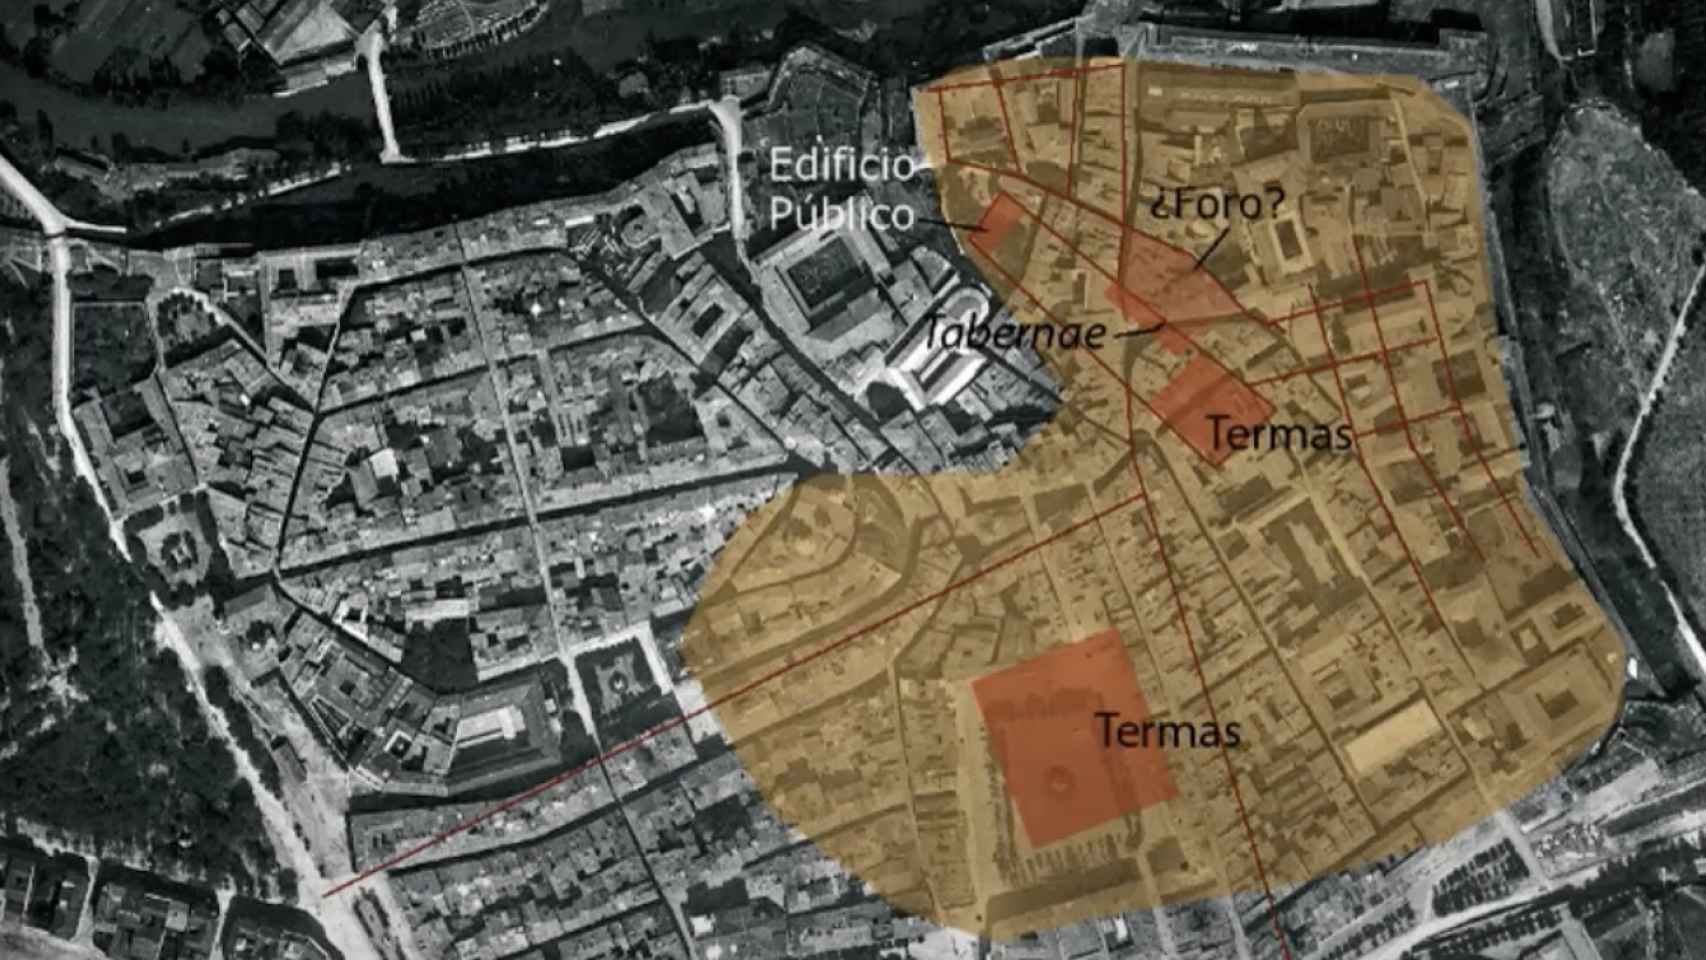 Mapa de Pompaelo sobre la ciudad de Roma. Fragmento extraído de la conferencia de María García-Barberena en el Museo Arqueológico Nacional.